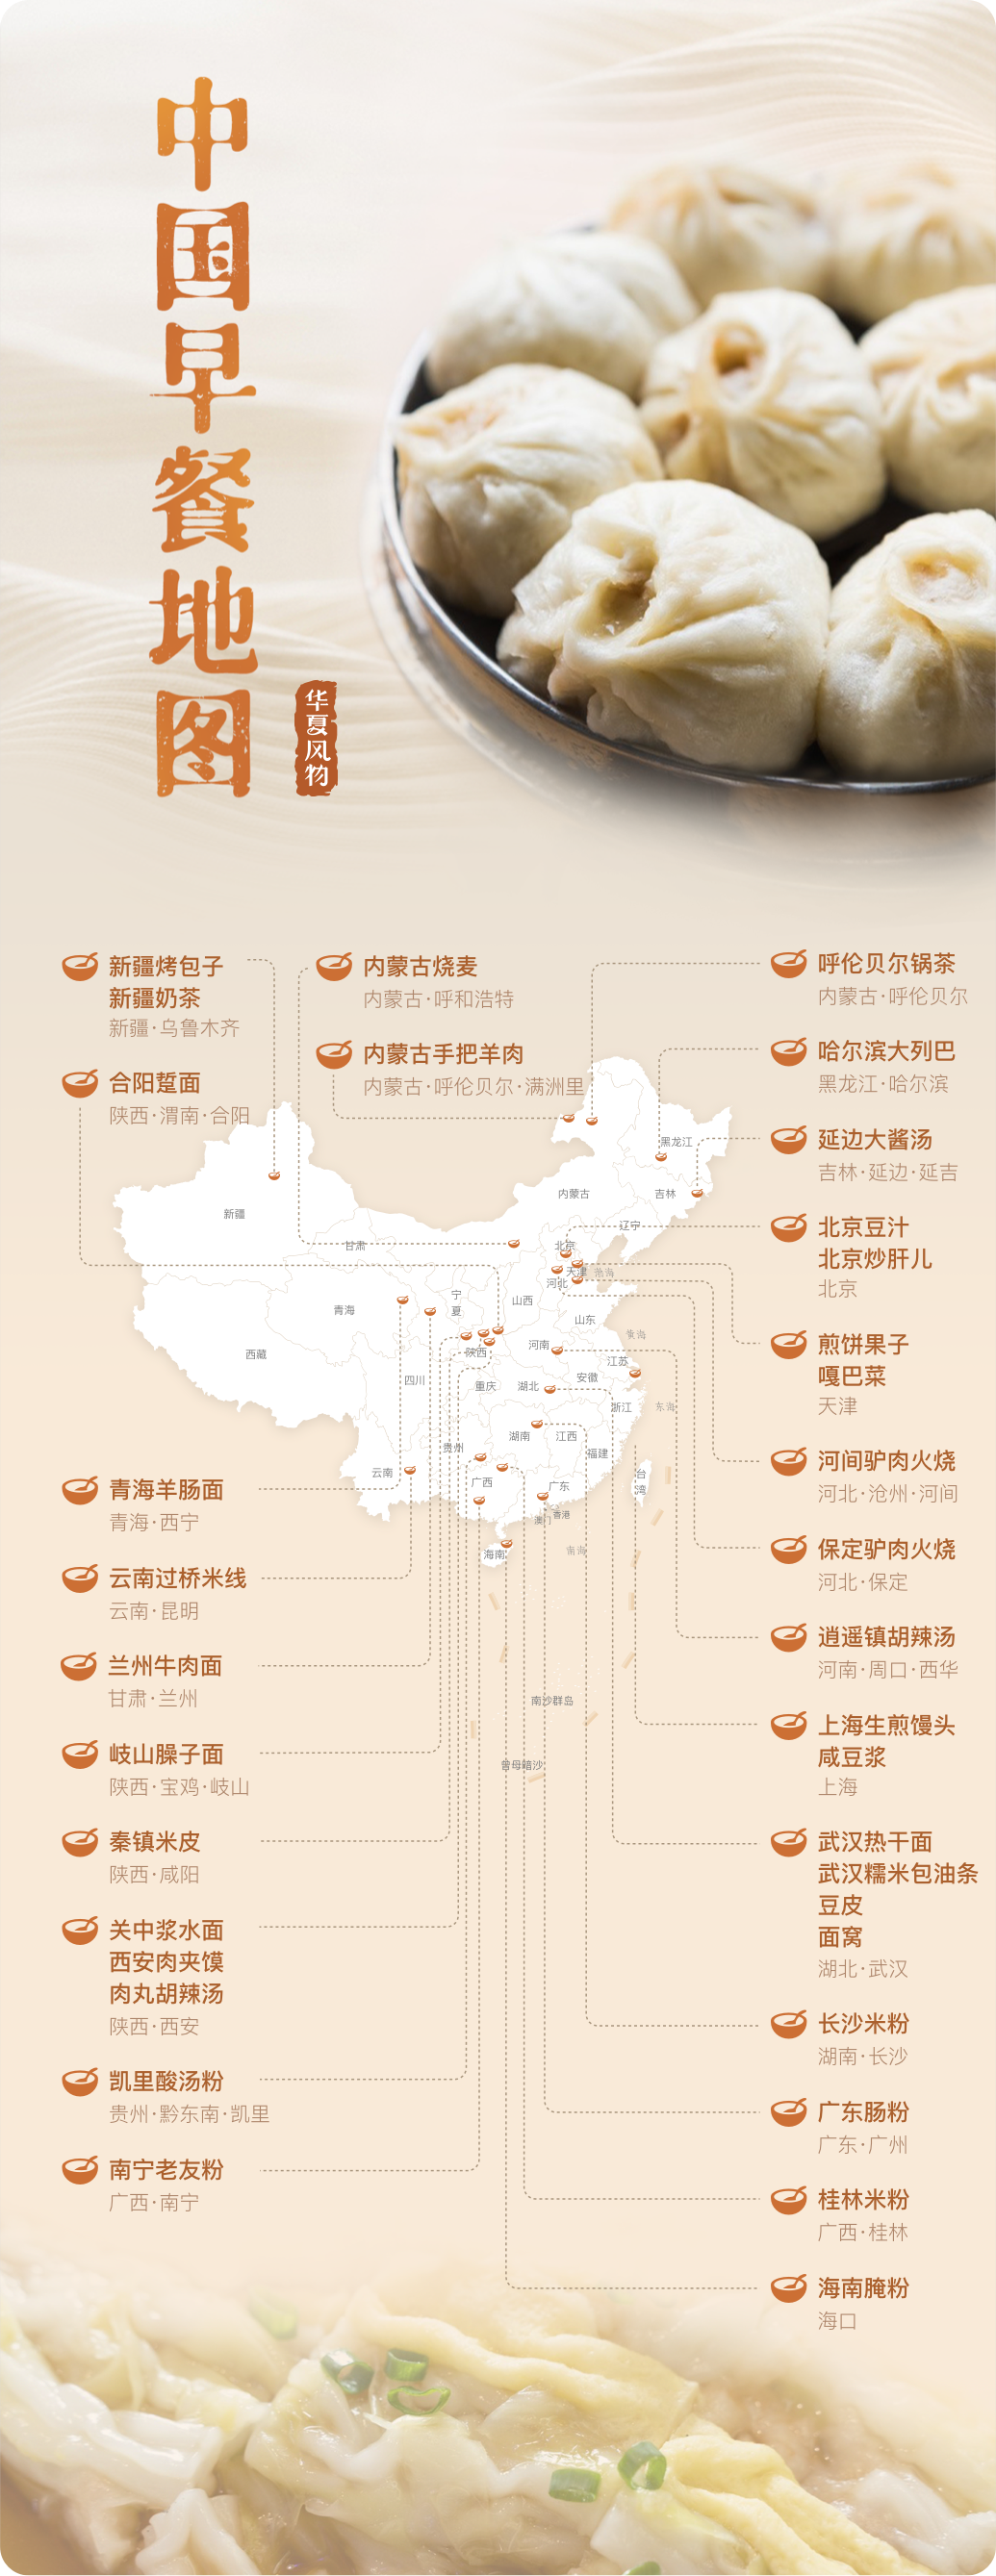 中国早餐地图 ©华夏风物